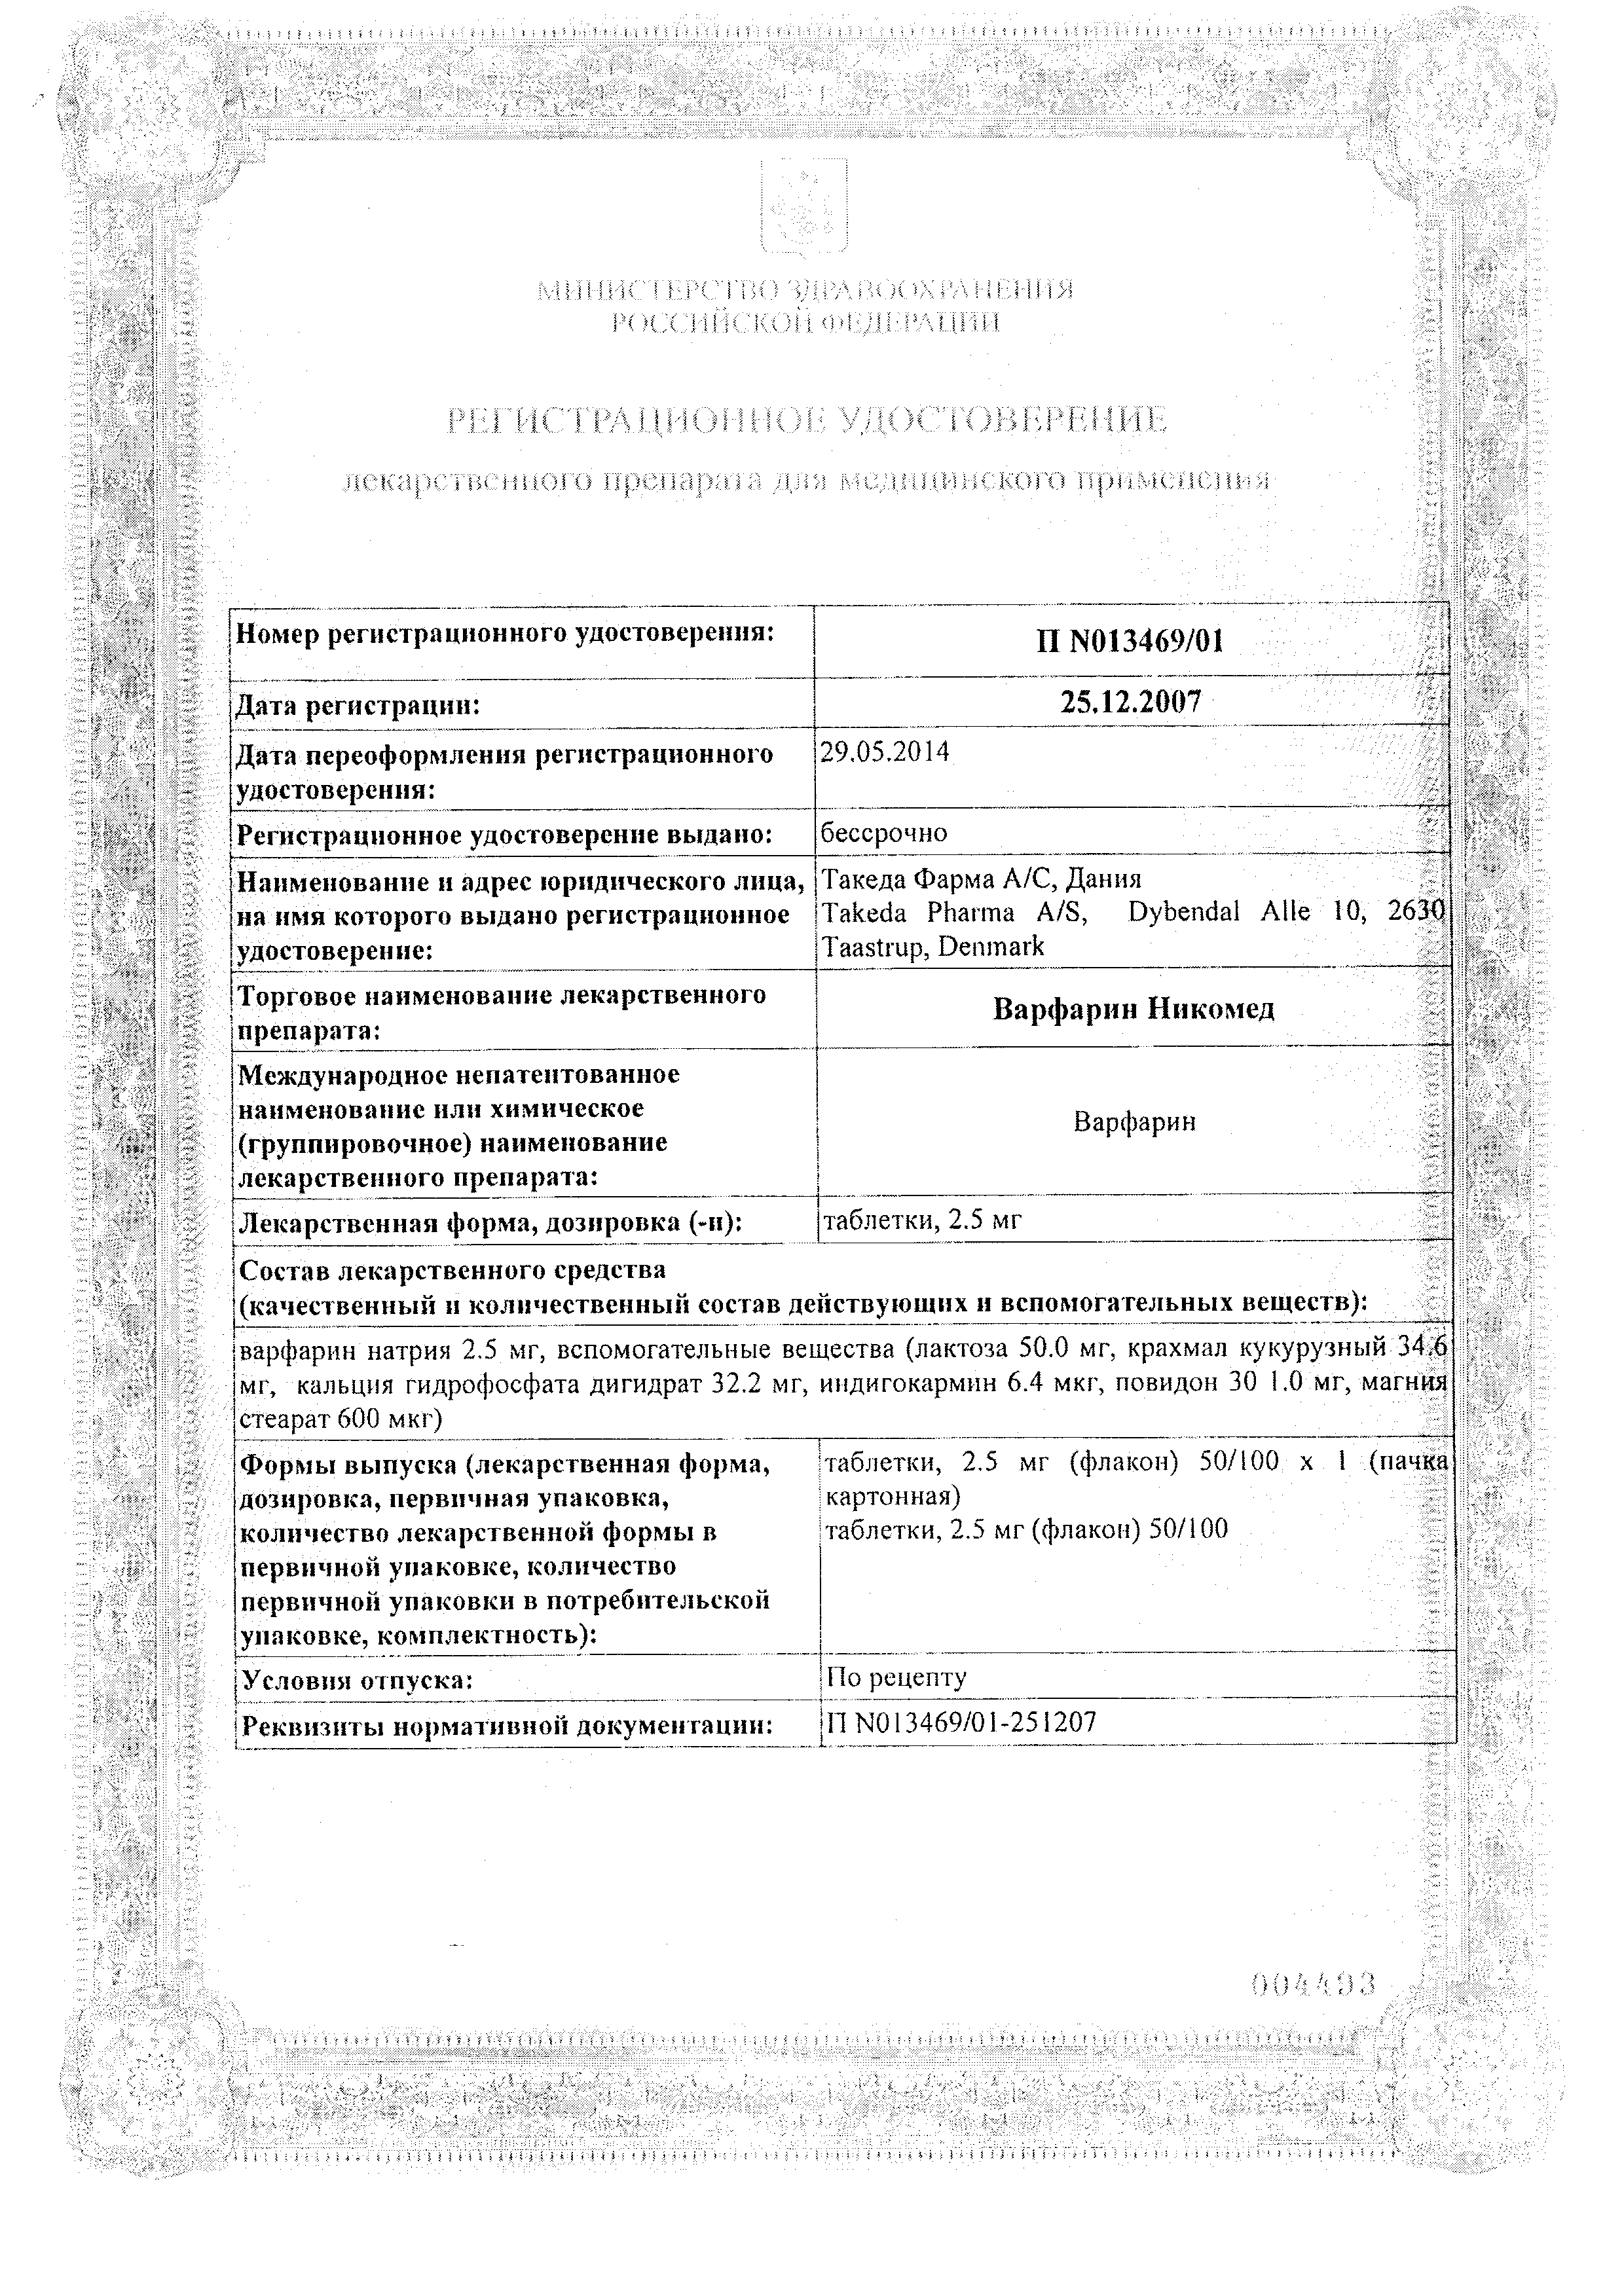 Варфарин Никомед сертификат